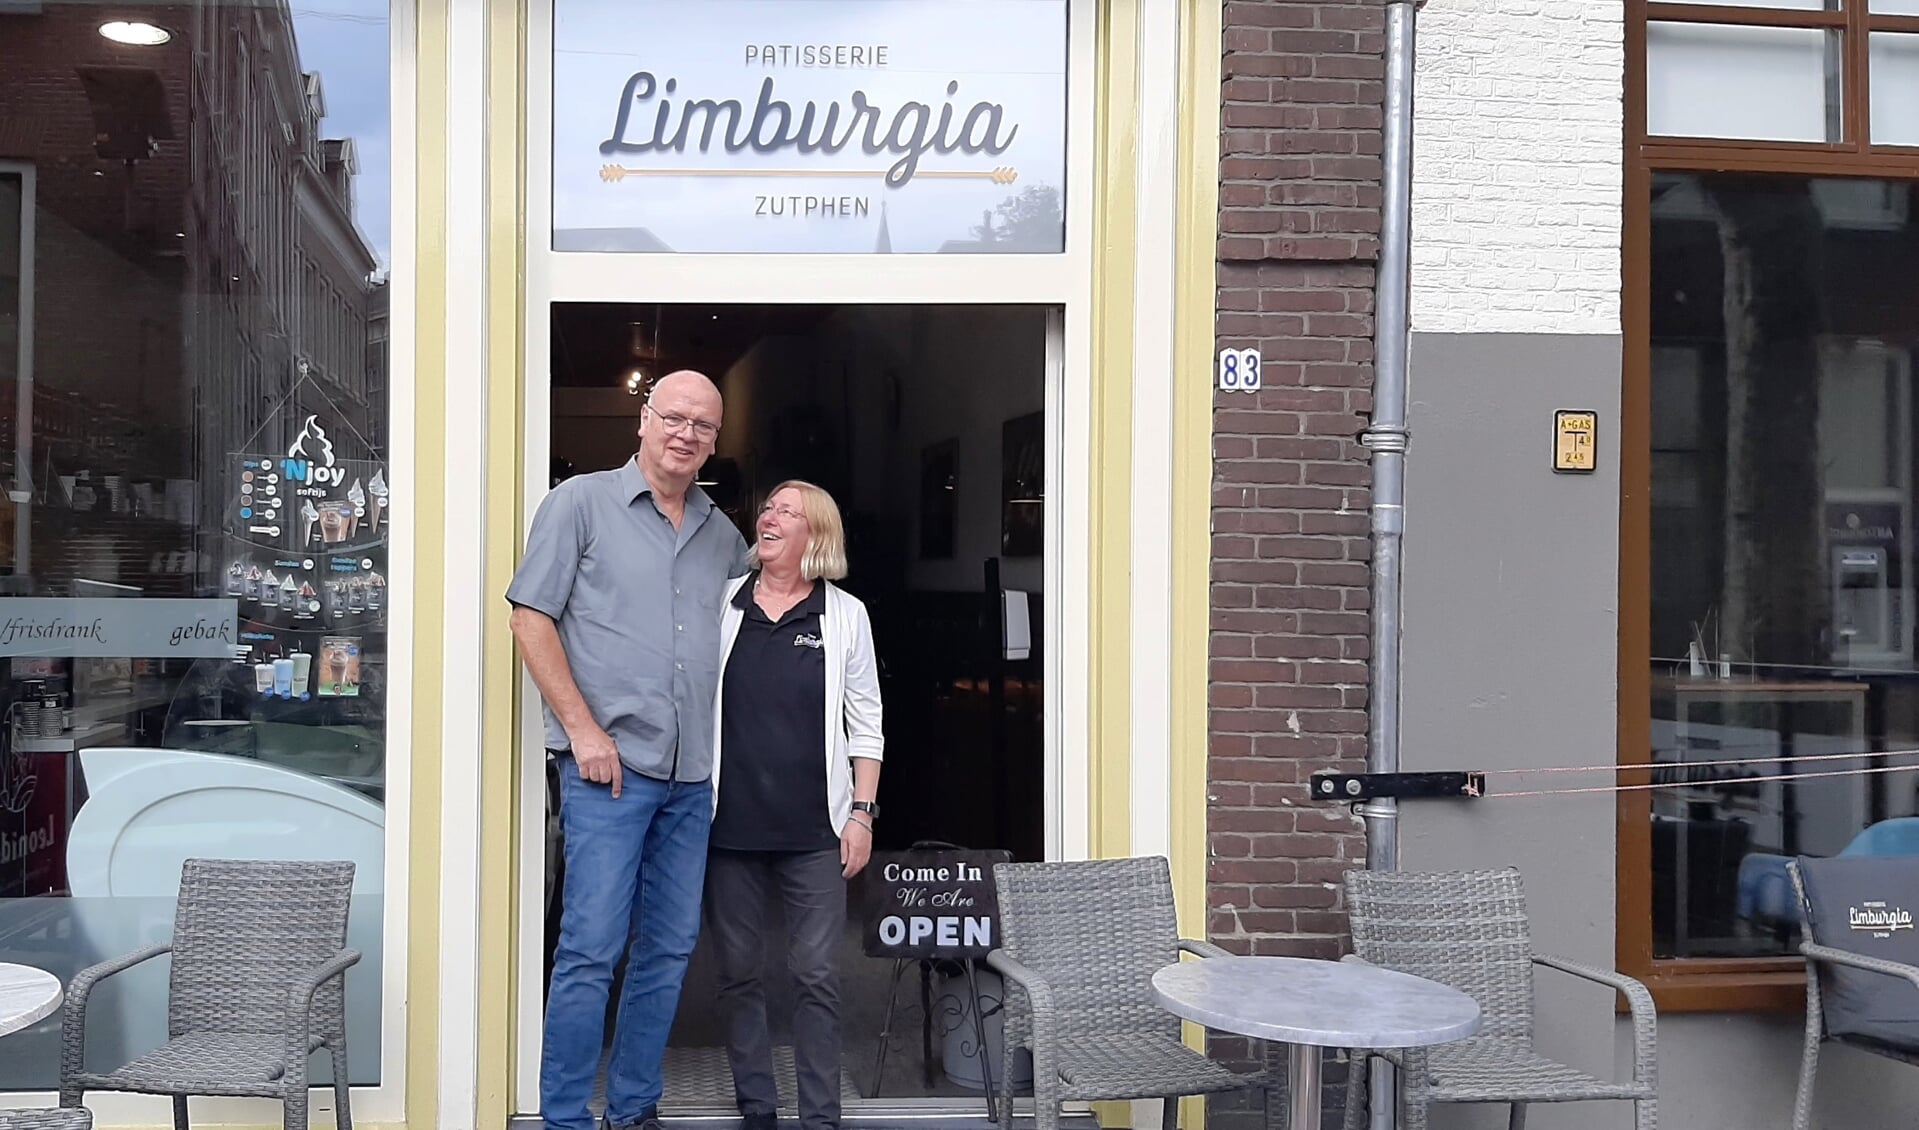 Anita en Fred Nagtegaal, eigenaren van Limburgia. Foto: Meike Wesselink